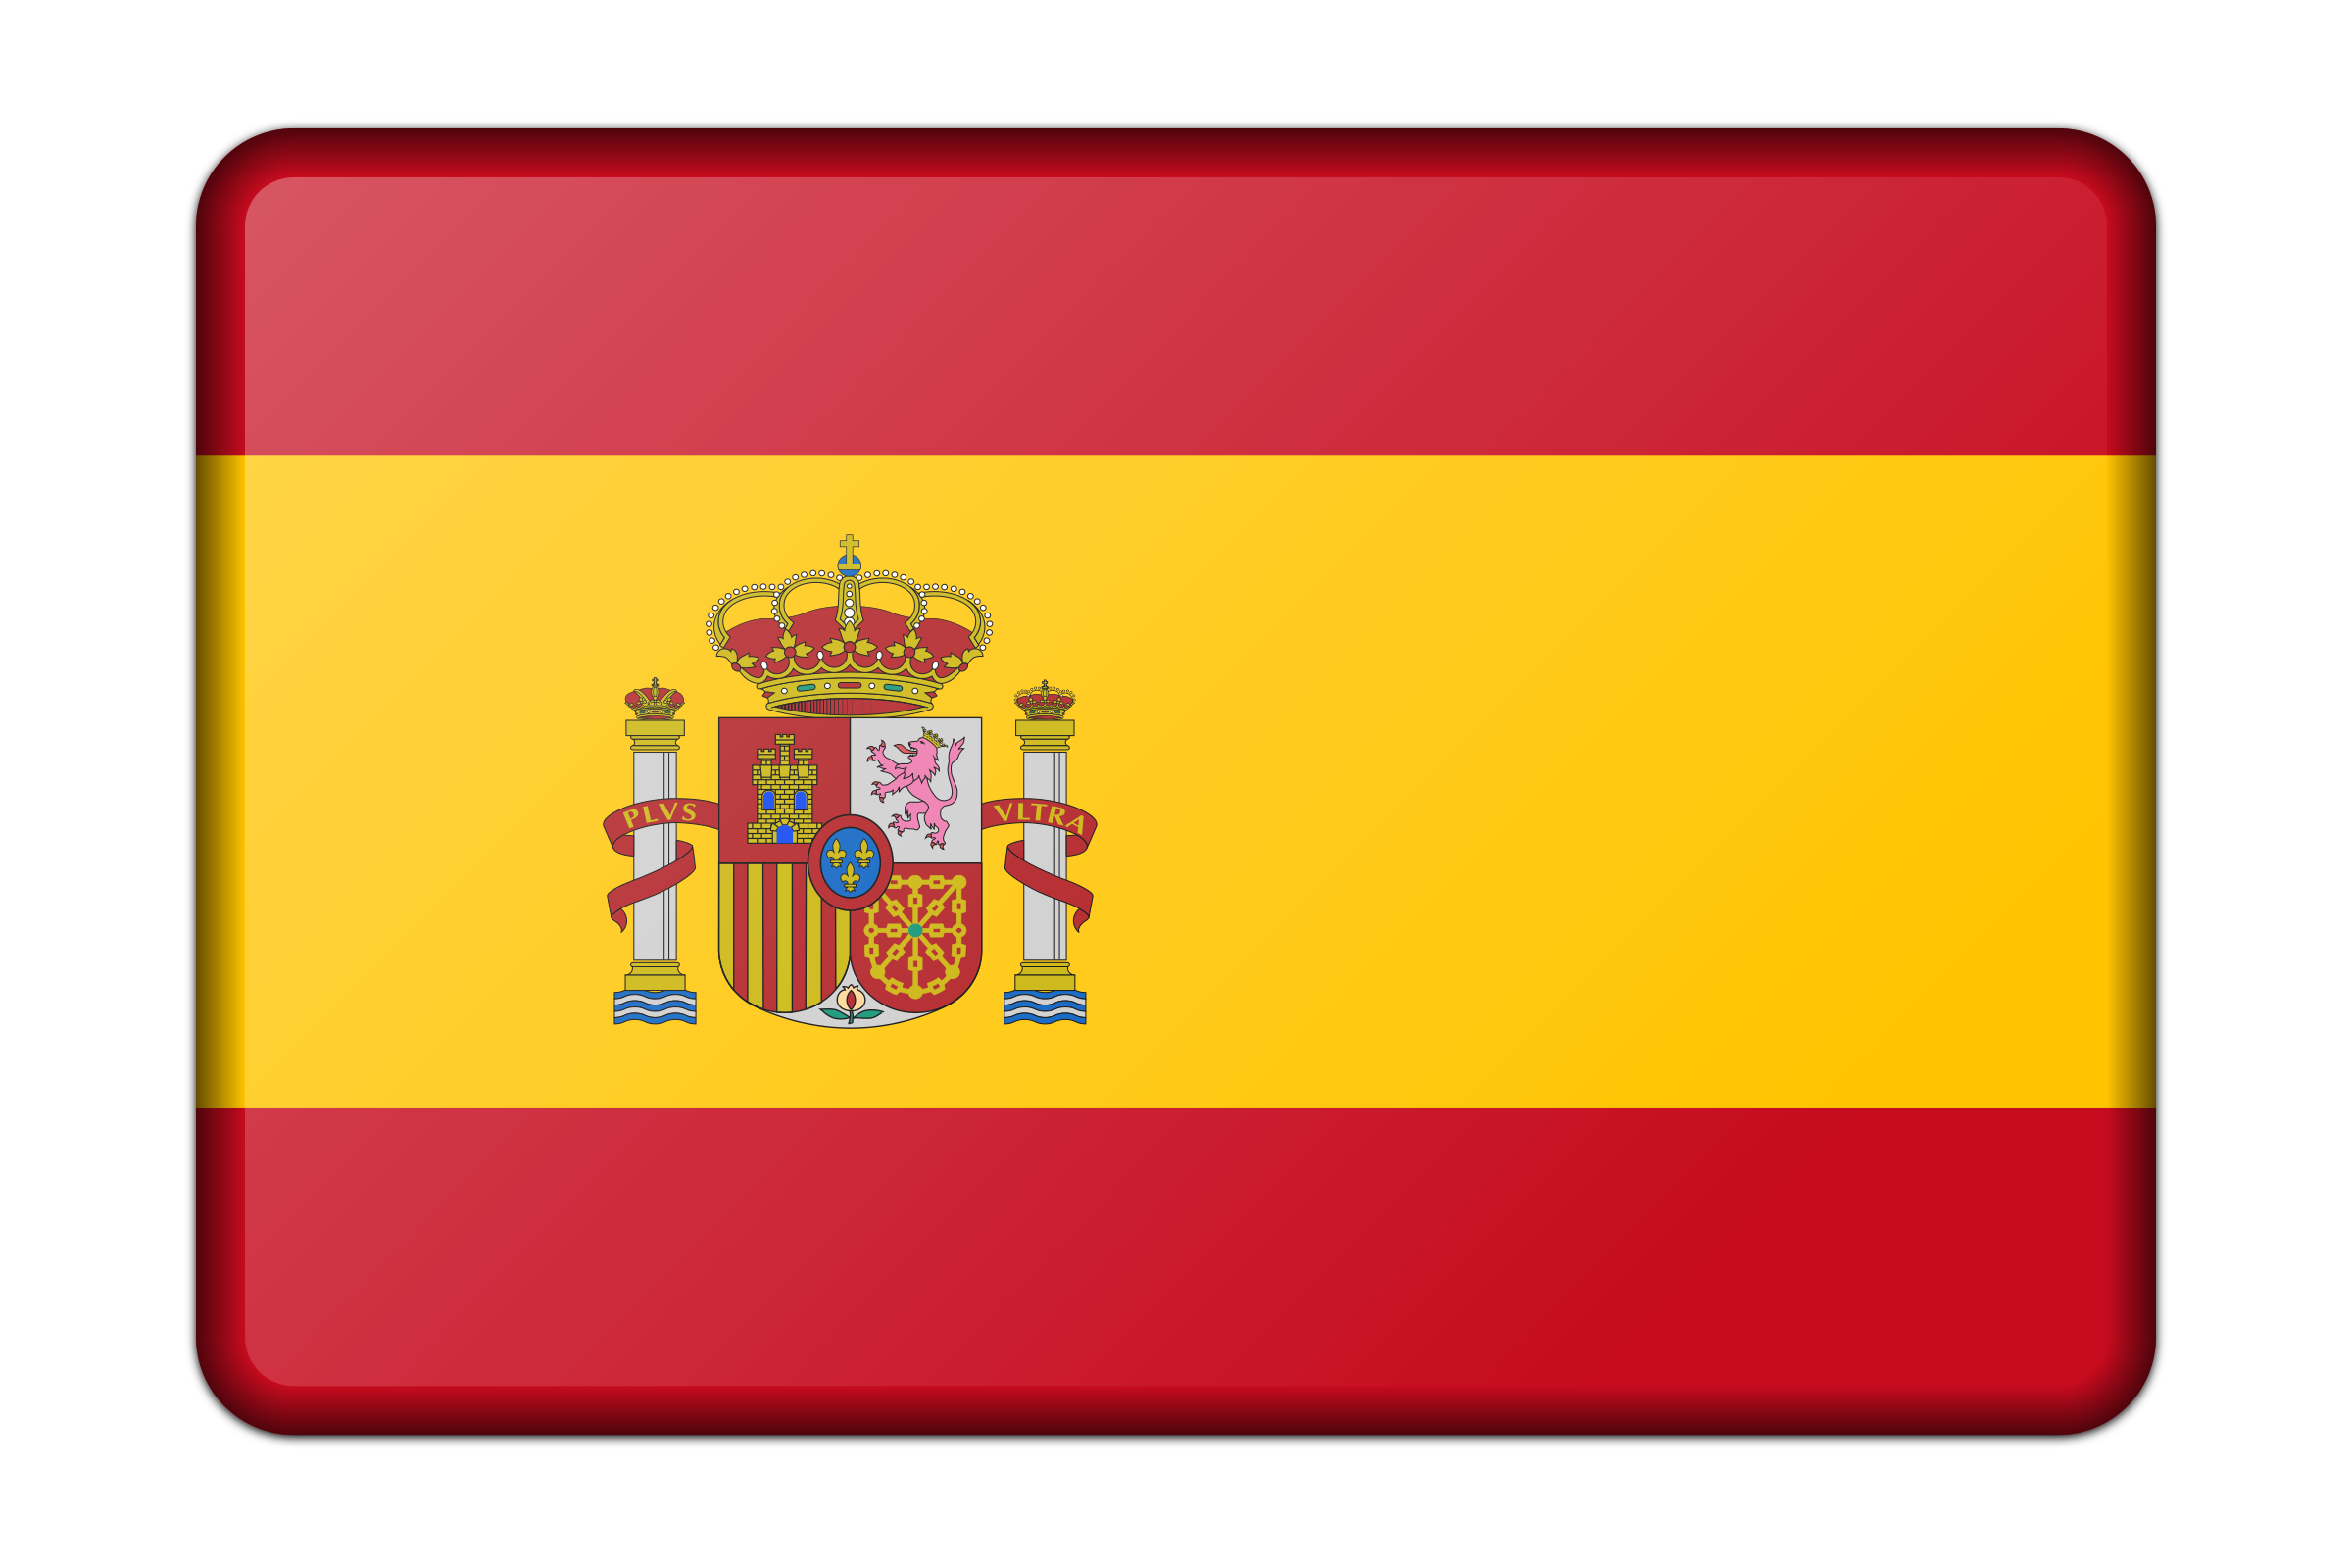 Clipart - Spain flag (bevelled)